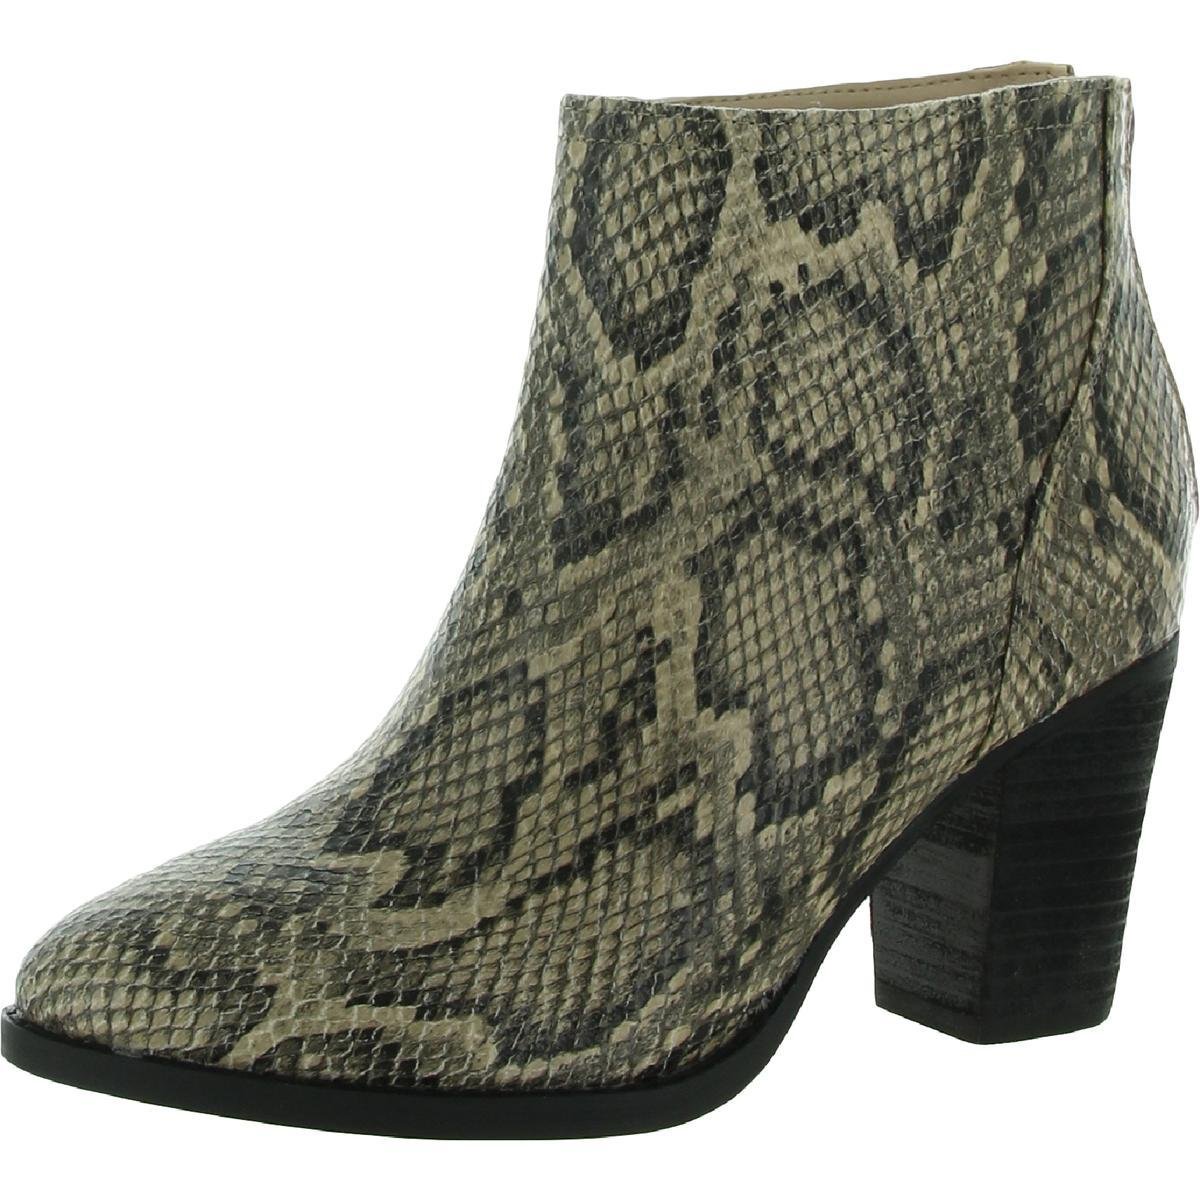 Zigi Soho Womens Harlan Snake Print Pointed Toe Ankle Boots by ZIGI SOHO